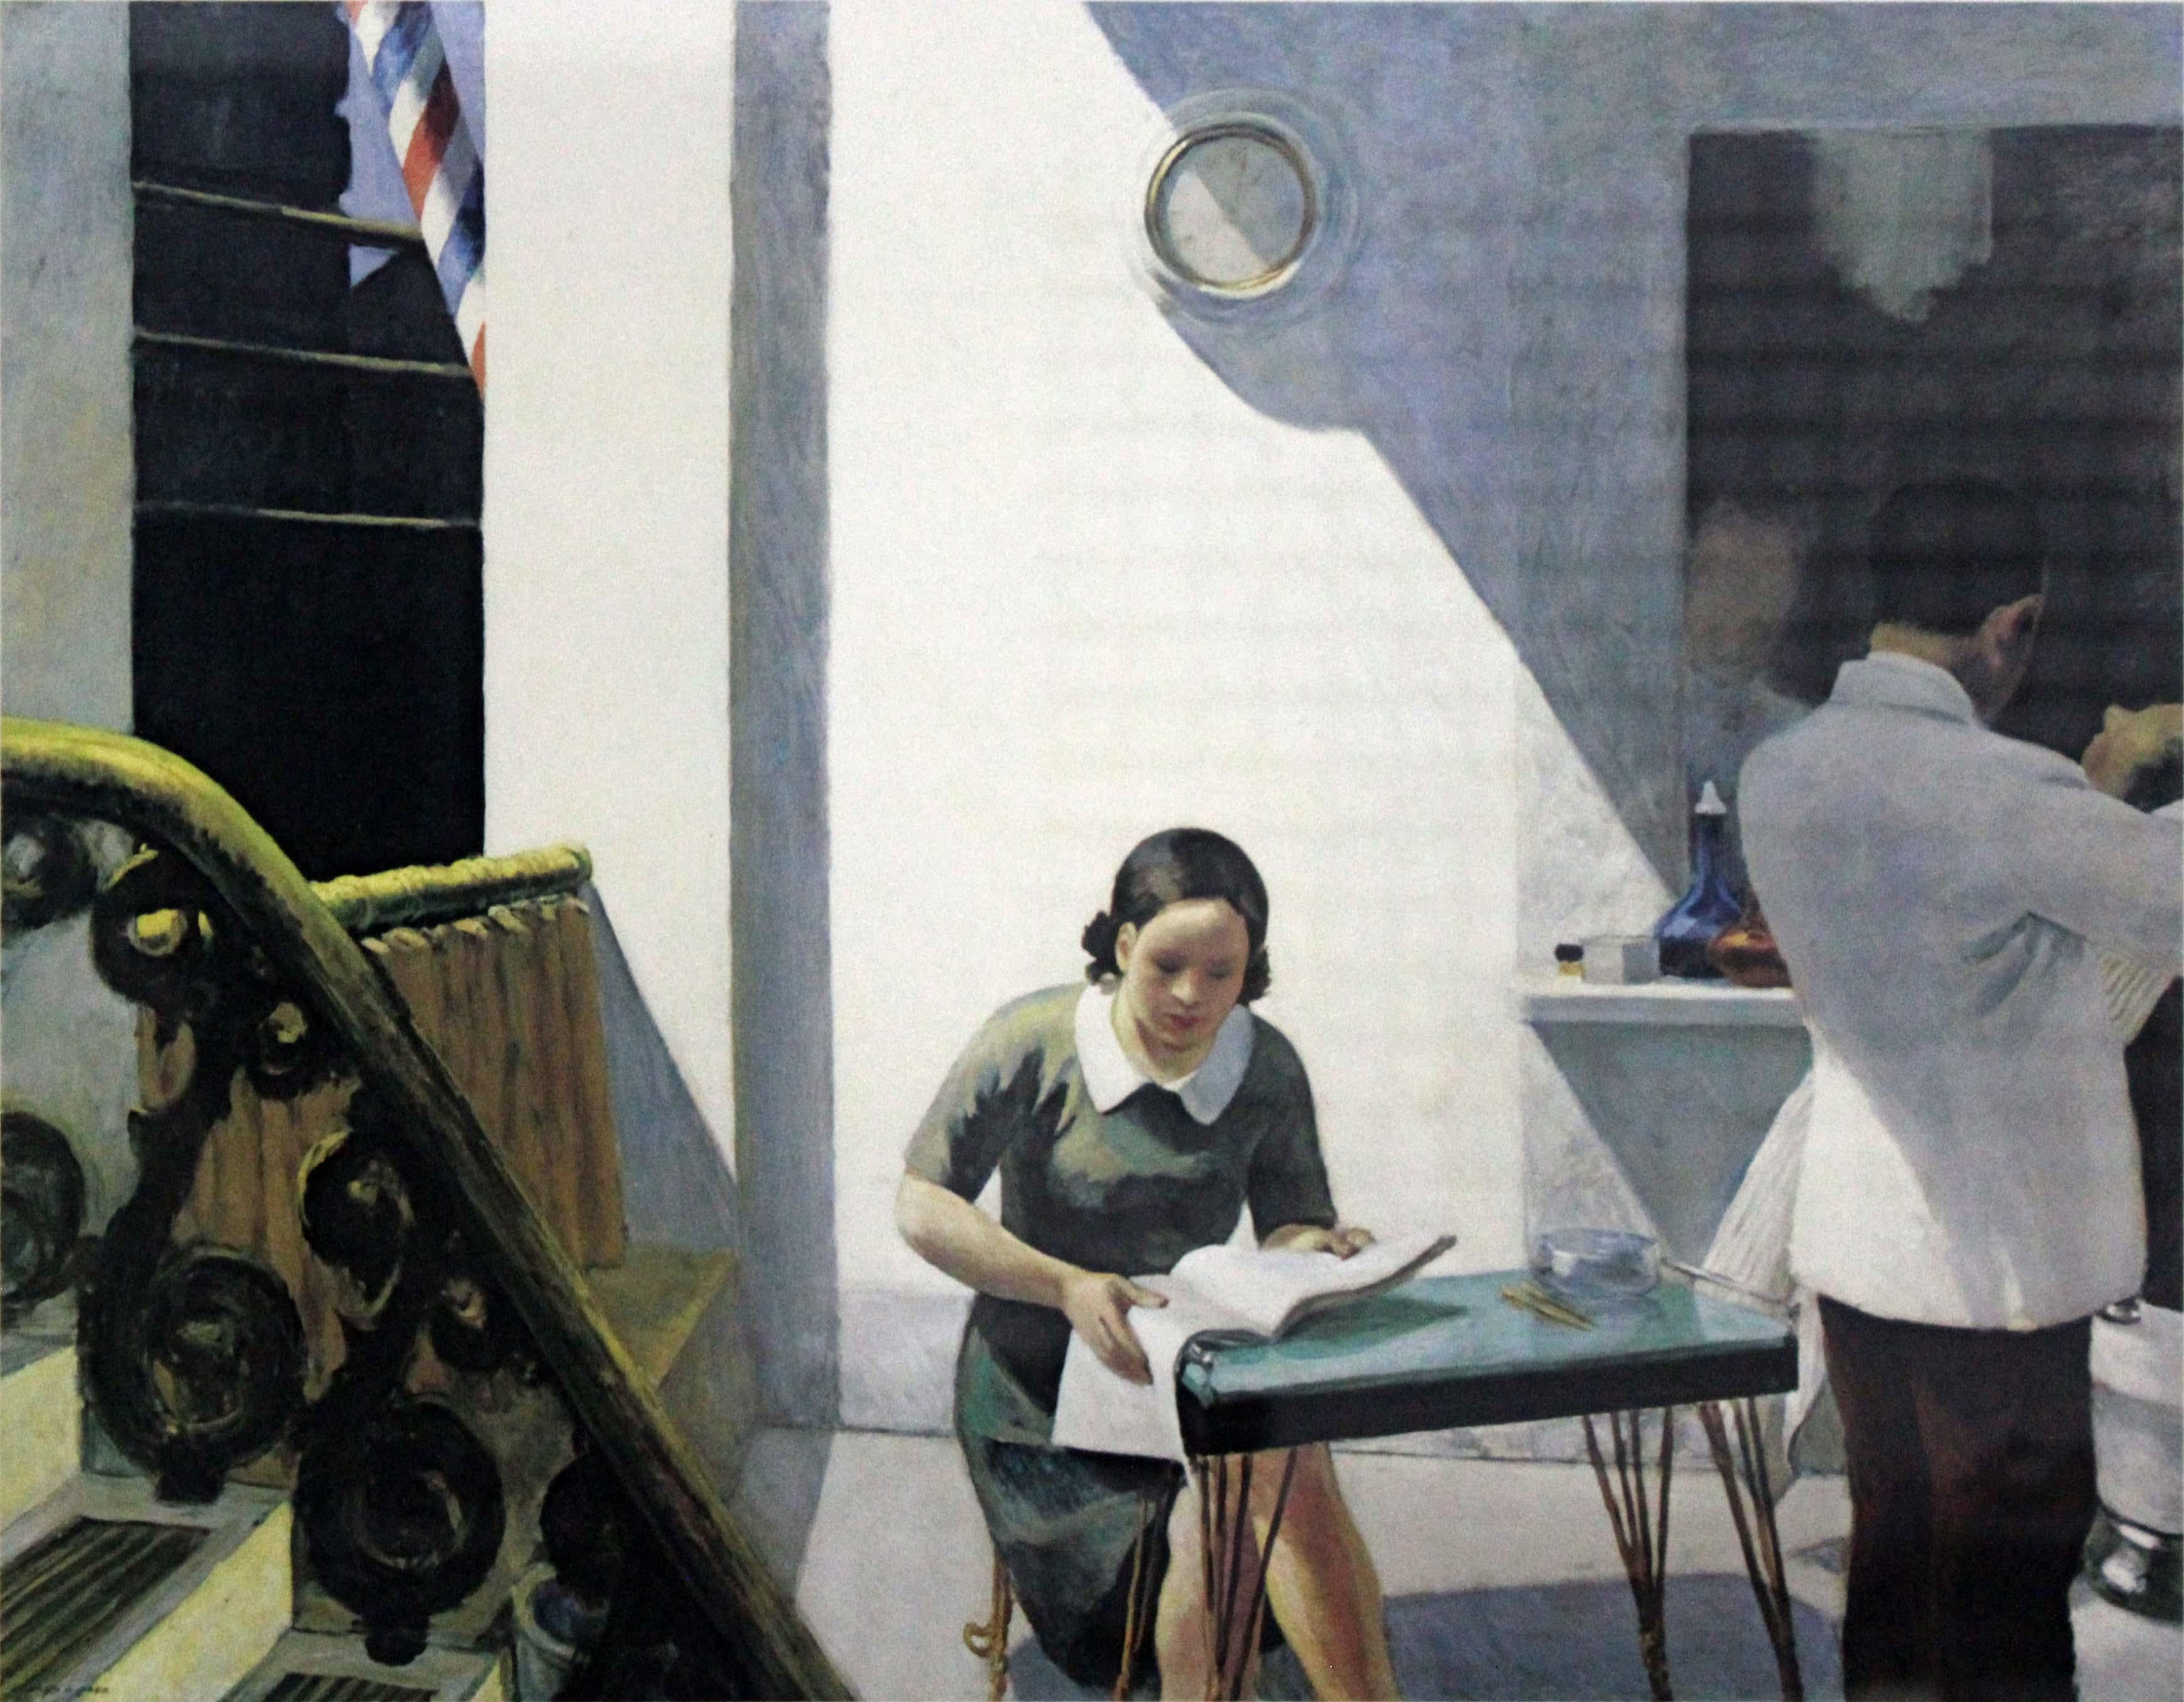 Ein ikonisches Bild für Sammler moderner Americana-Kunst - ein Vintage-Poster im Neuberger Museum State University of New York College at Purchase mit dem berühmten Gemälde The Barber Shop von Edward Hopper. Copyright Trig Graphics Incorporated